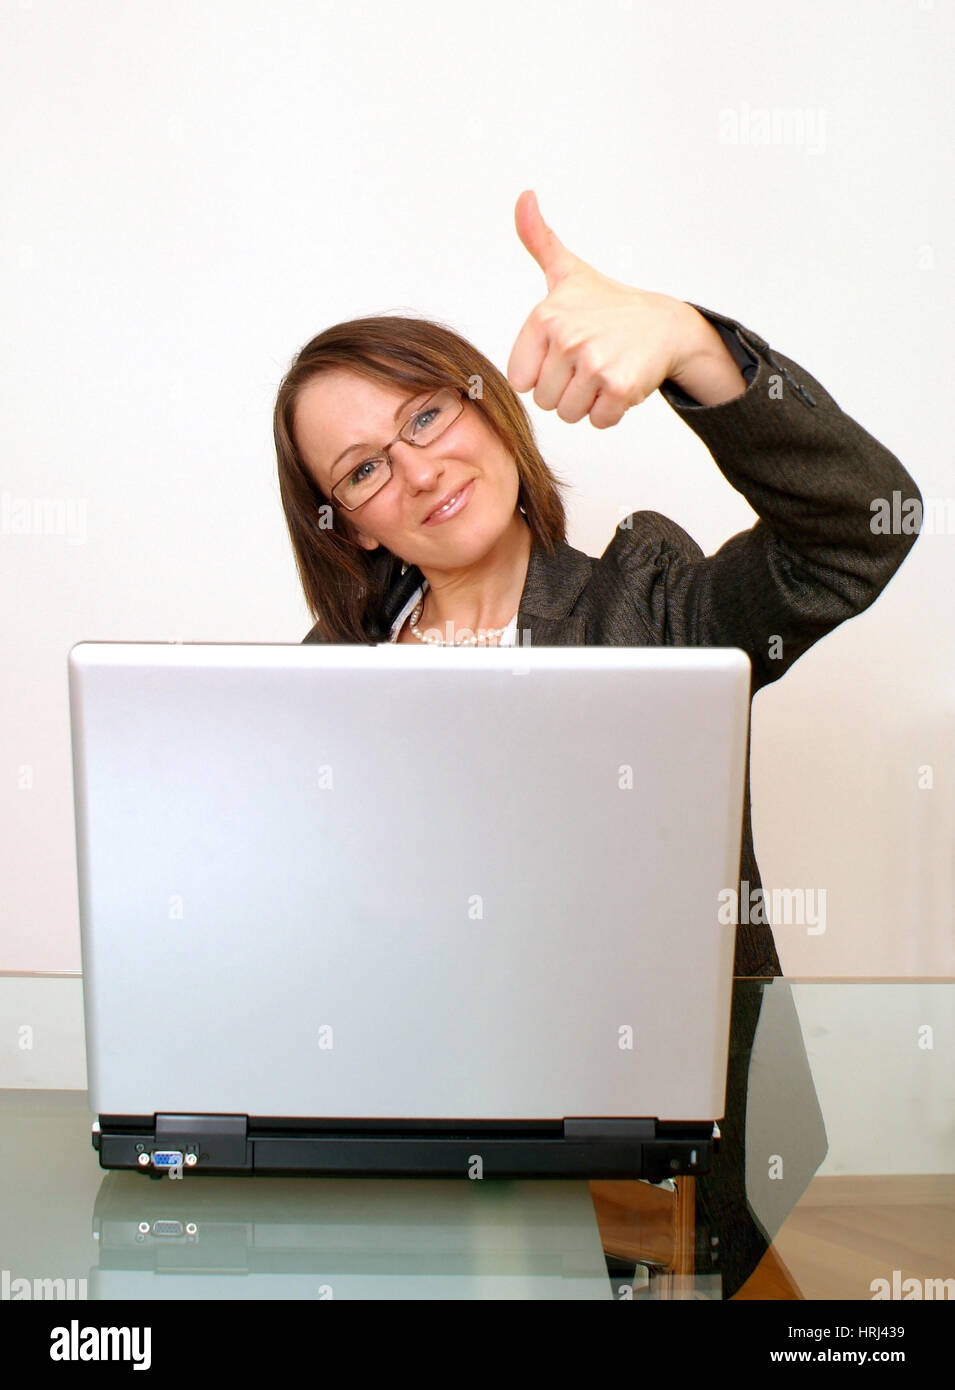 Erfolgreiche Gesch?ftsfrau mit Laptop - mujer de negocios exitosa con portátil Foto de stock